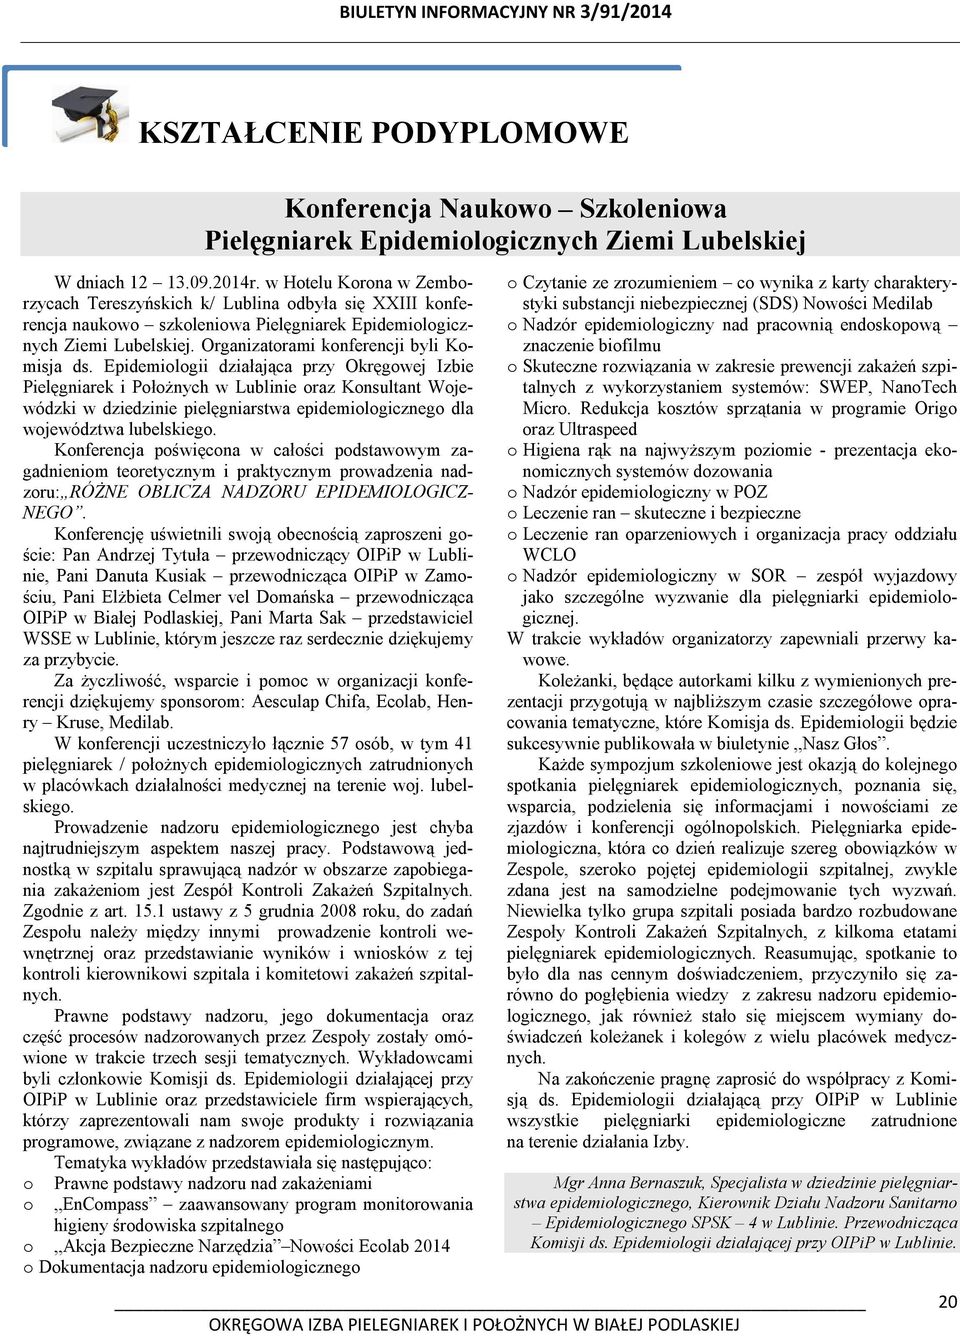 Epidemiologii działająca przy Okręgowej Izbie Pielęgniarek i Położnych w Lublinie oraz Konsultant Wojewódzki w dziedzinie pielęgniarstwa epidemiologicznego dla województwa lubelskiego.